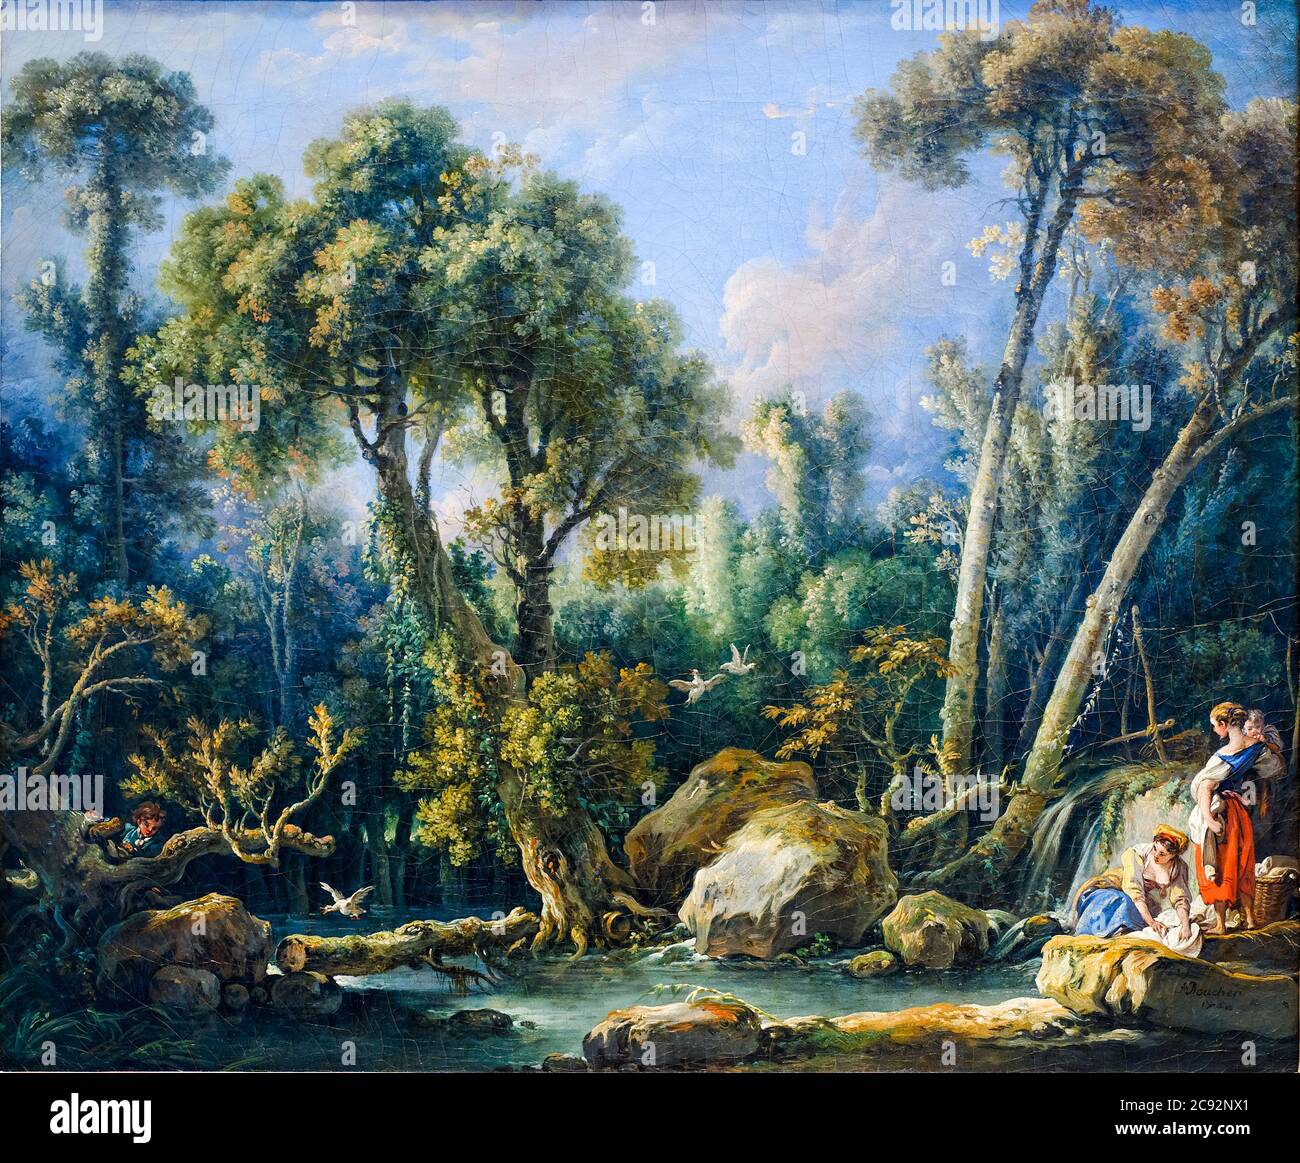 Laundresses in a Landscape, Gemälde von François Boucher, 1760 Stockfoto